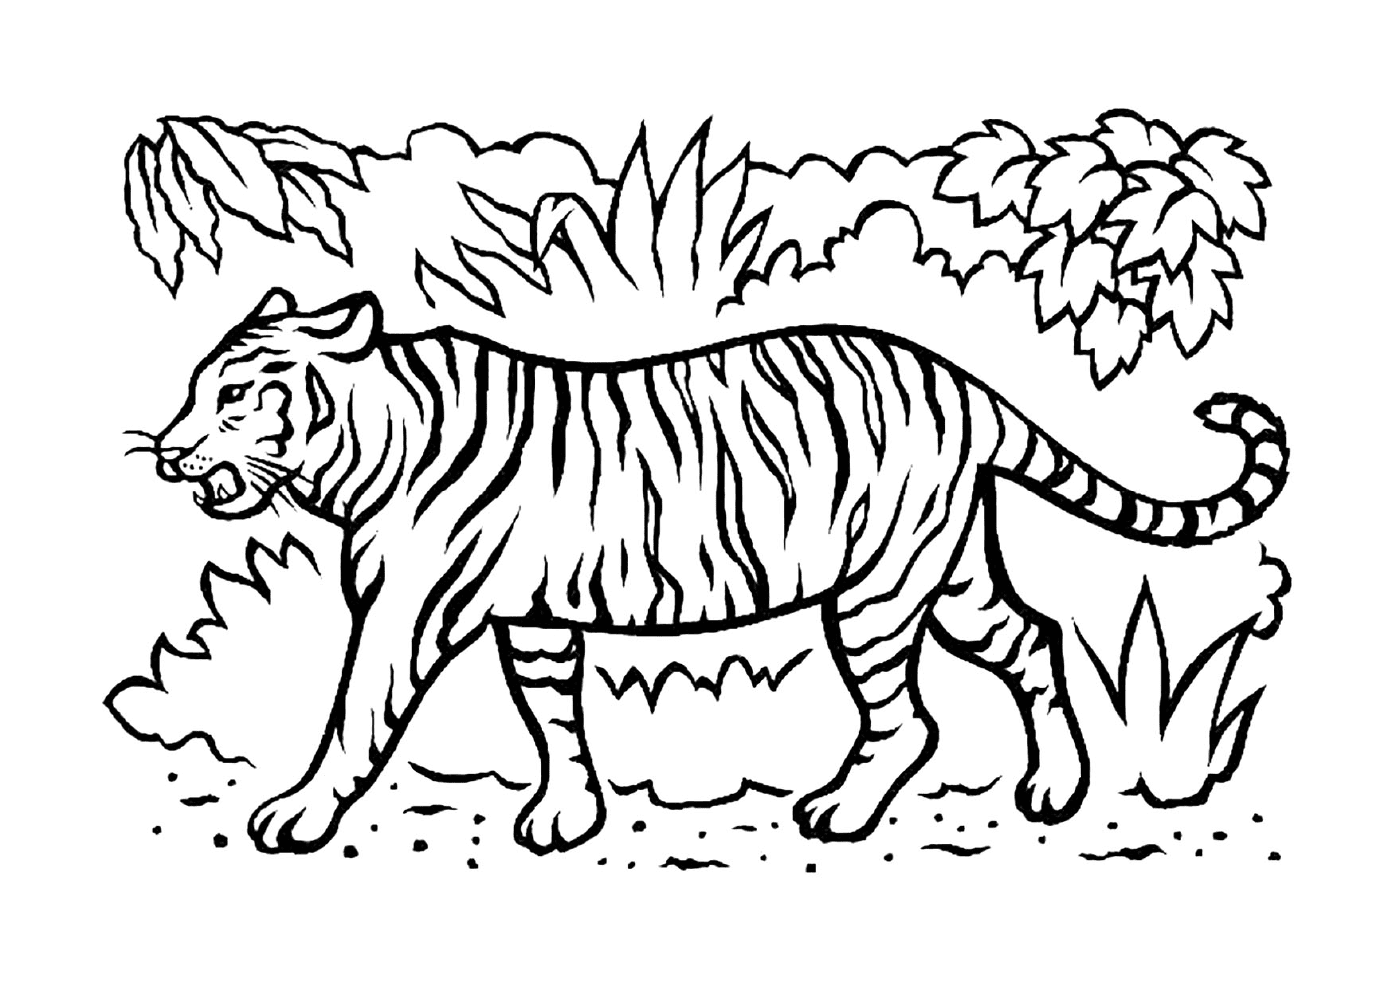  Прекрасный тигр в саванне 